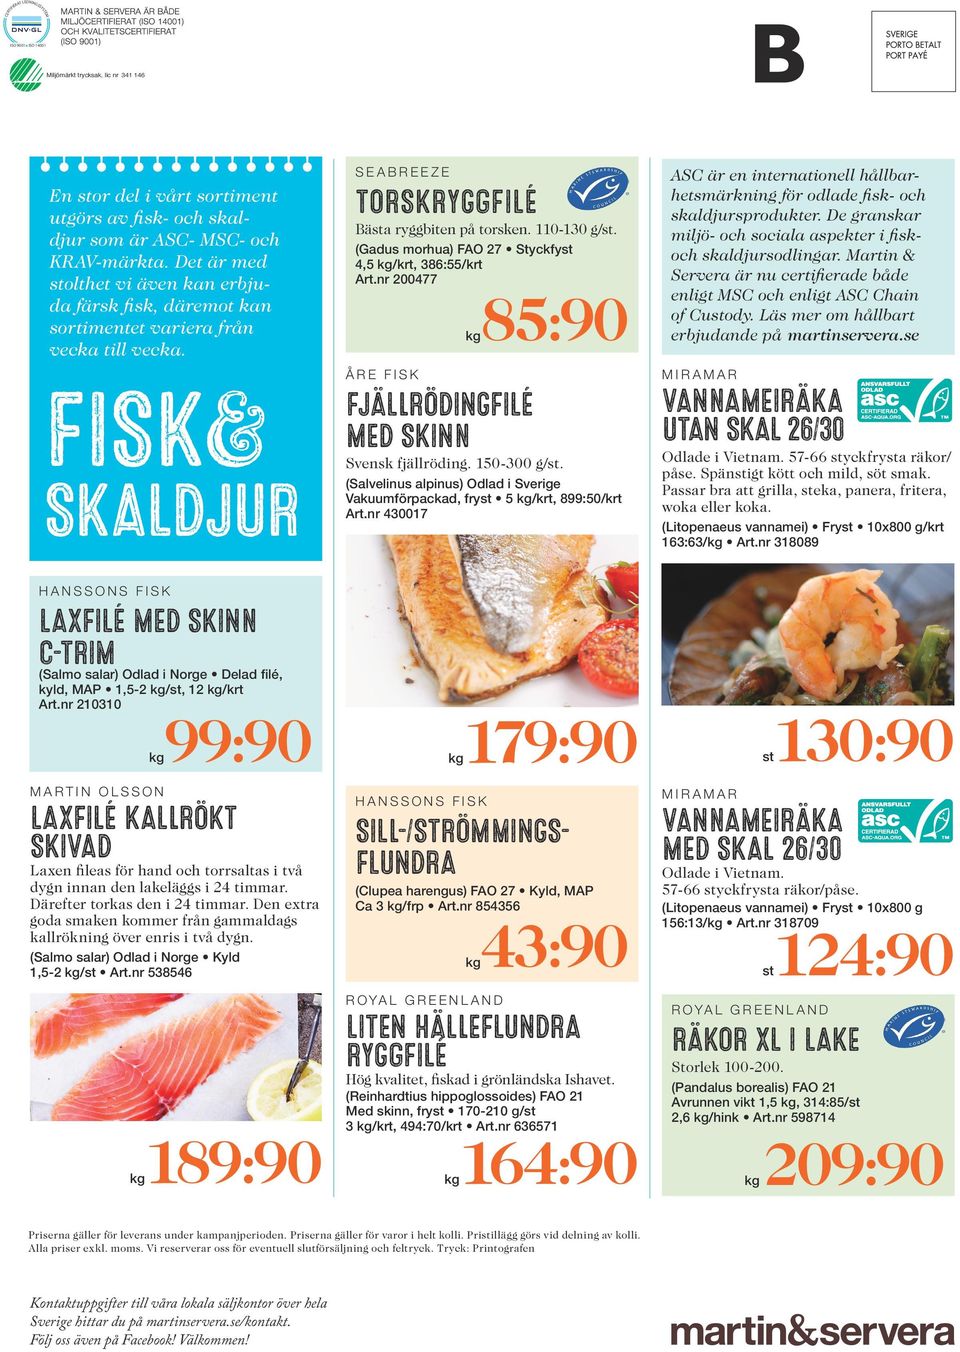 FISK& SKALDJUR HANSSONS FISK LAXFILÉ MED SKINN C-TRIM (Salmo salar) Odlad i Norge Delad filé, kyld, MAP 1,5-2 /st, 12 /krt Art.